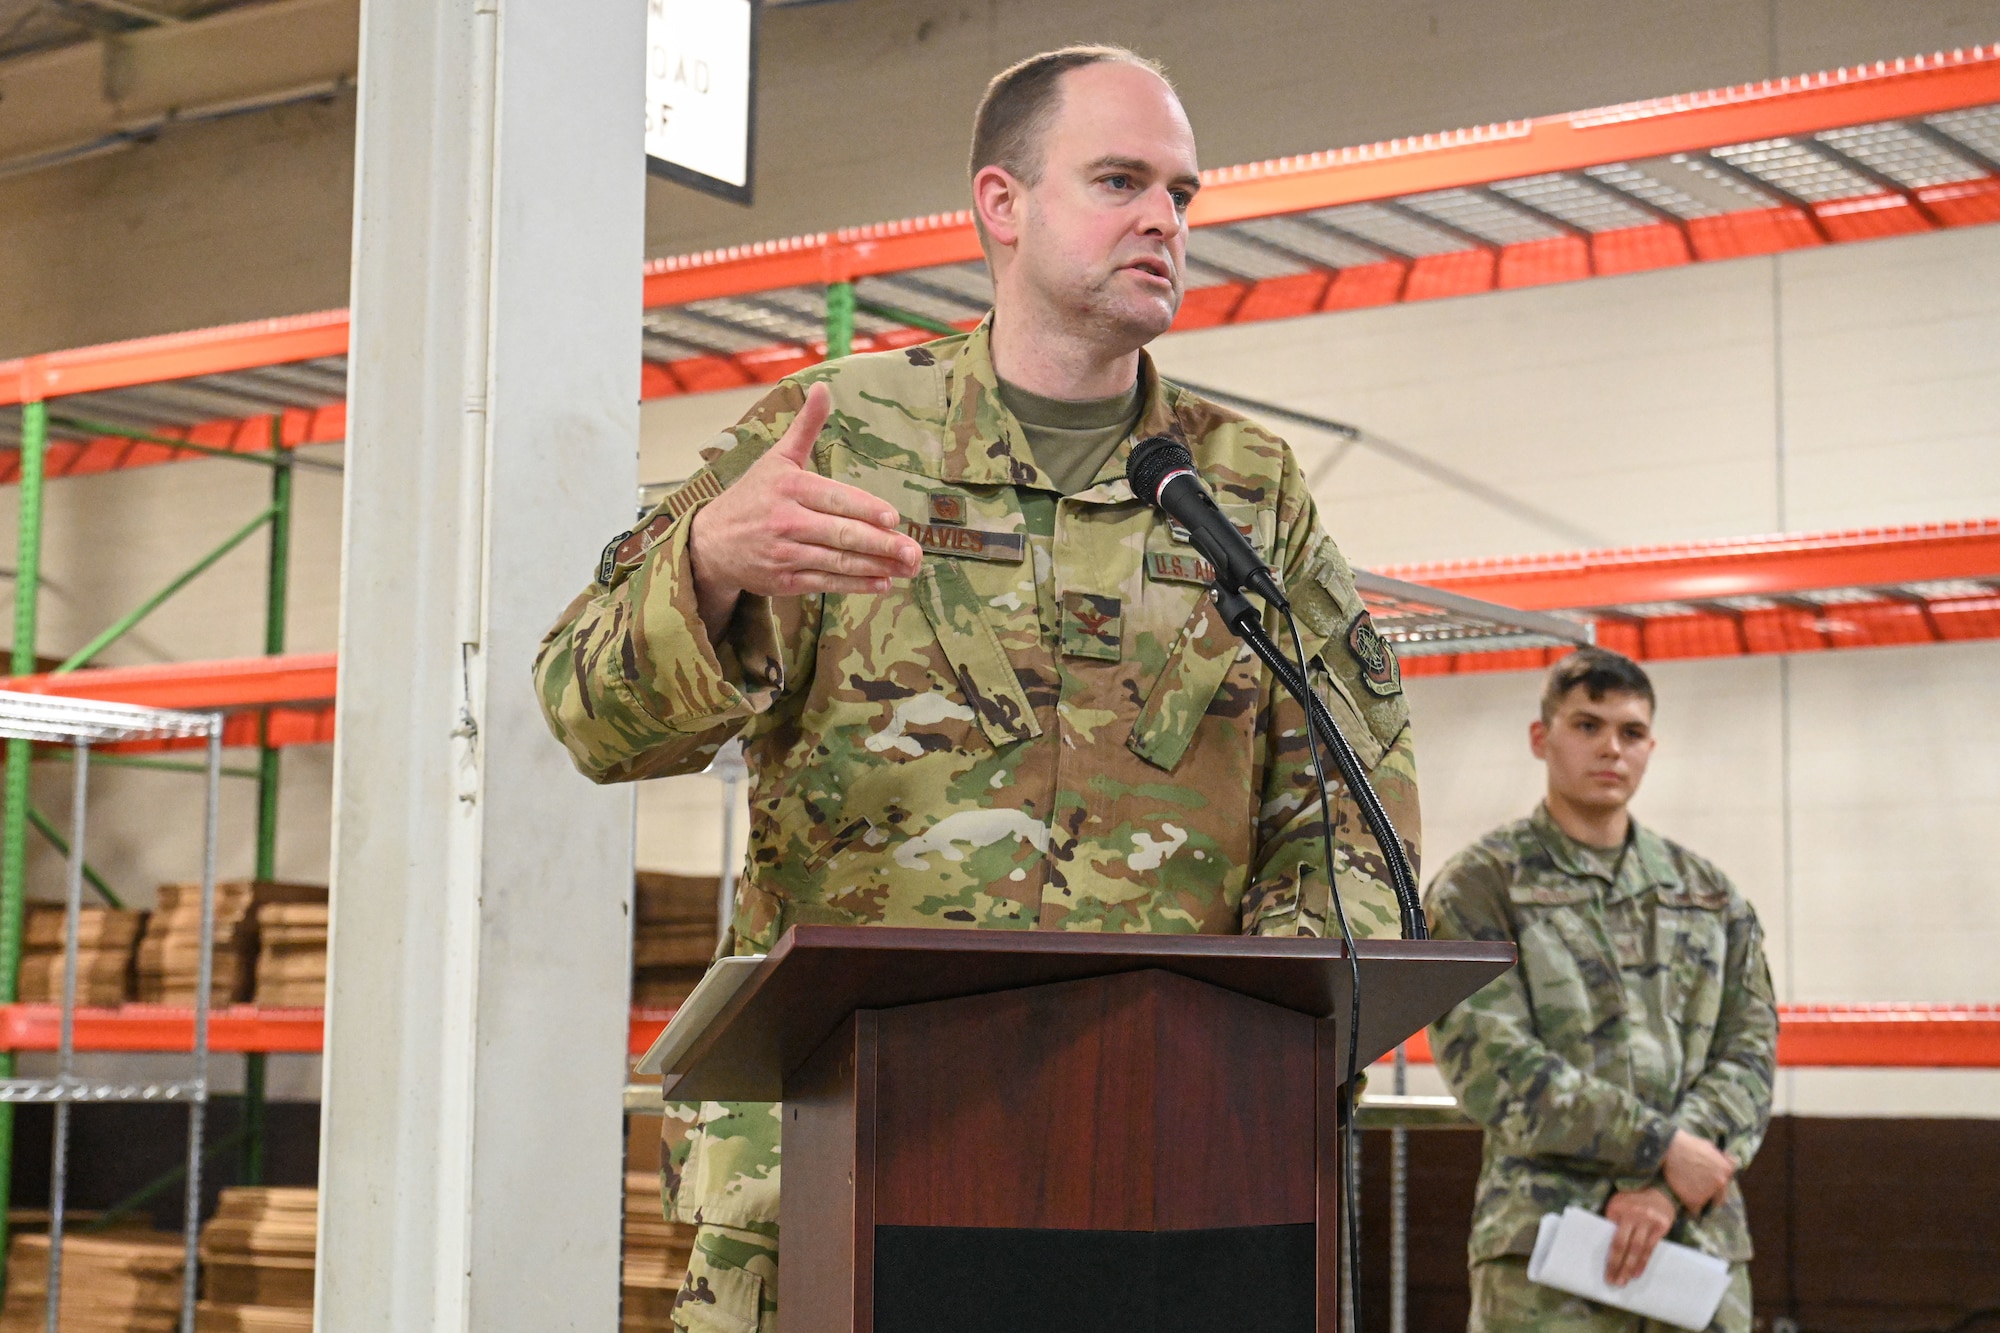 A man in uniform gives a speech.